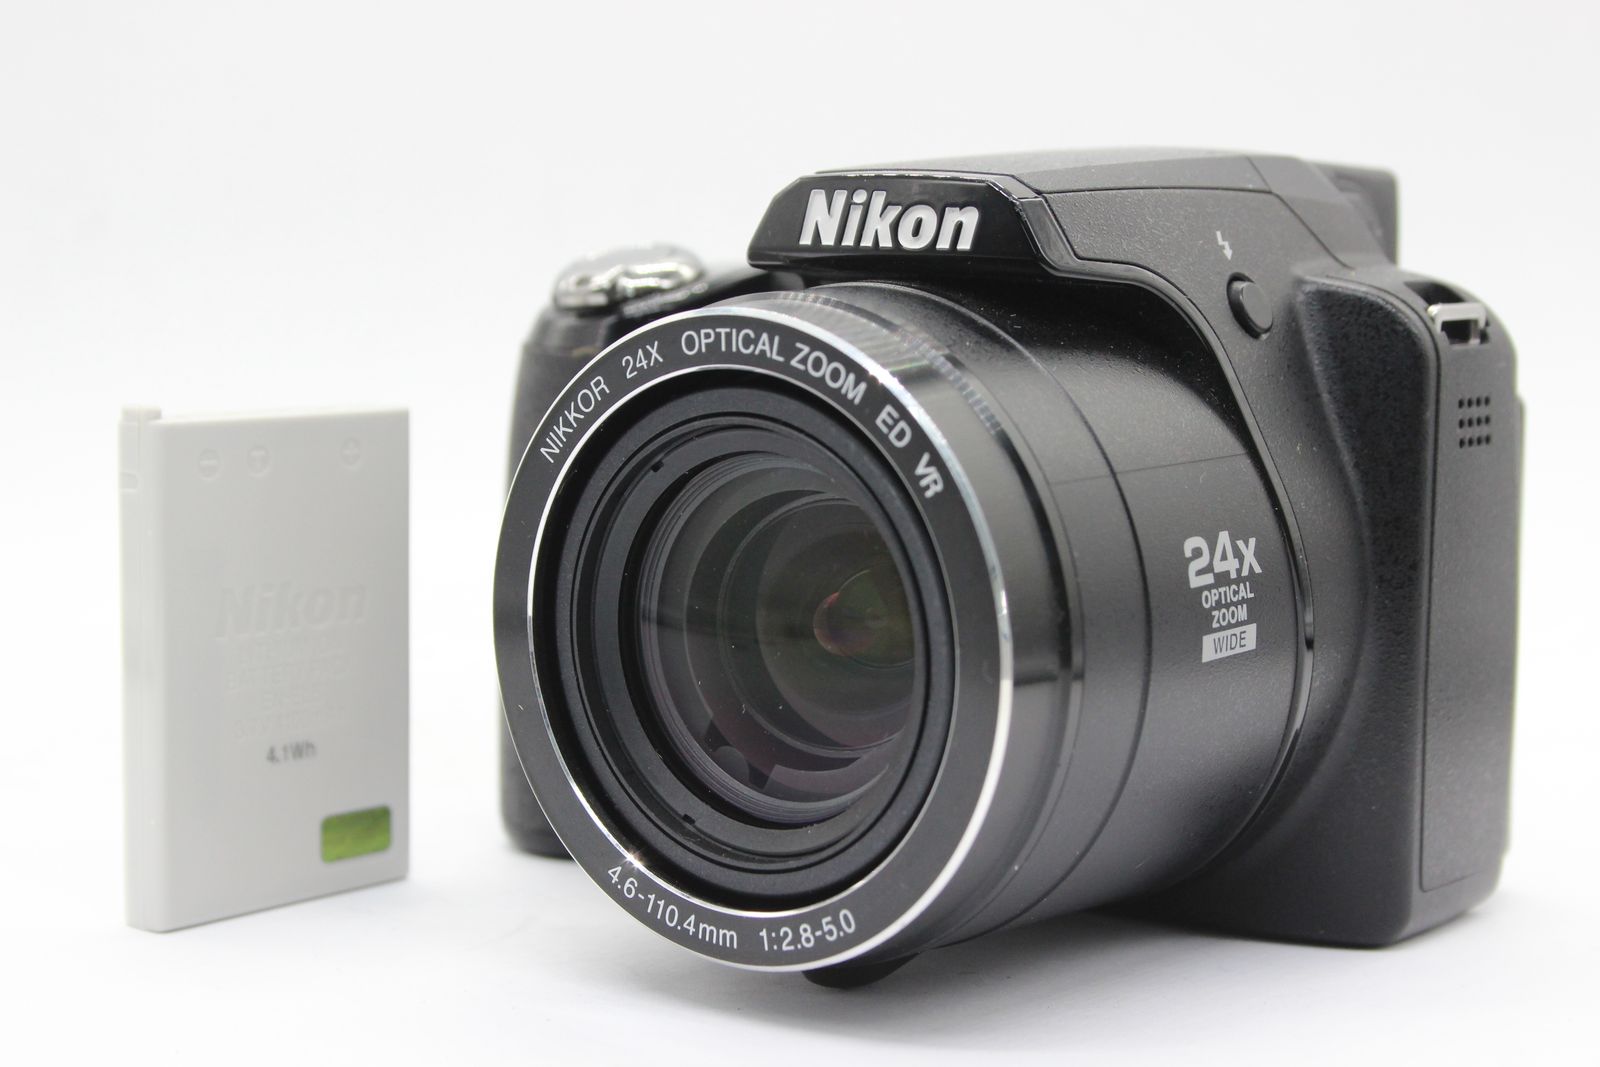 【返品保証】 ニコン Nikon Coolpix P90 24x バッテリー付き コンパクトデジタルカメラ  s4998